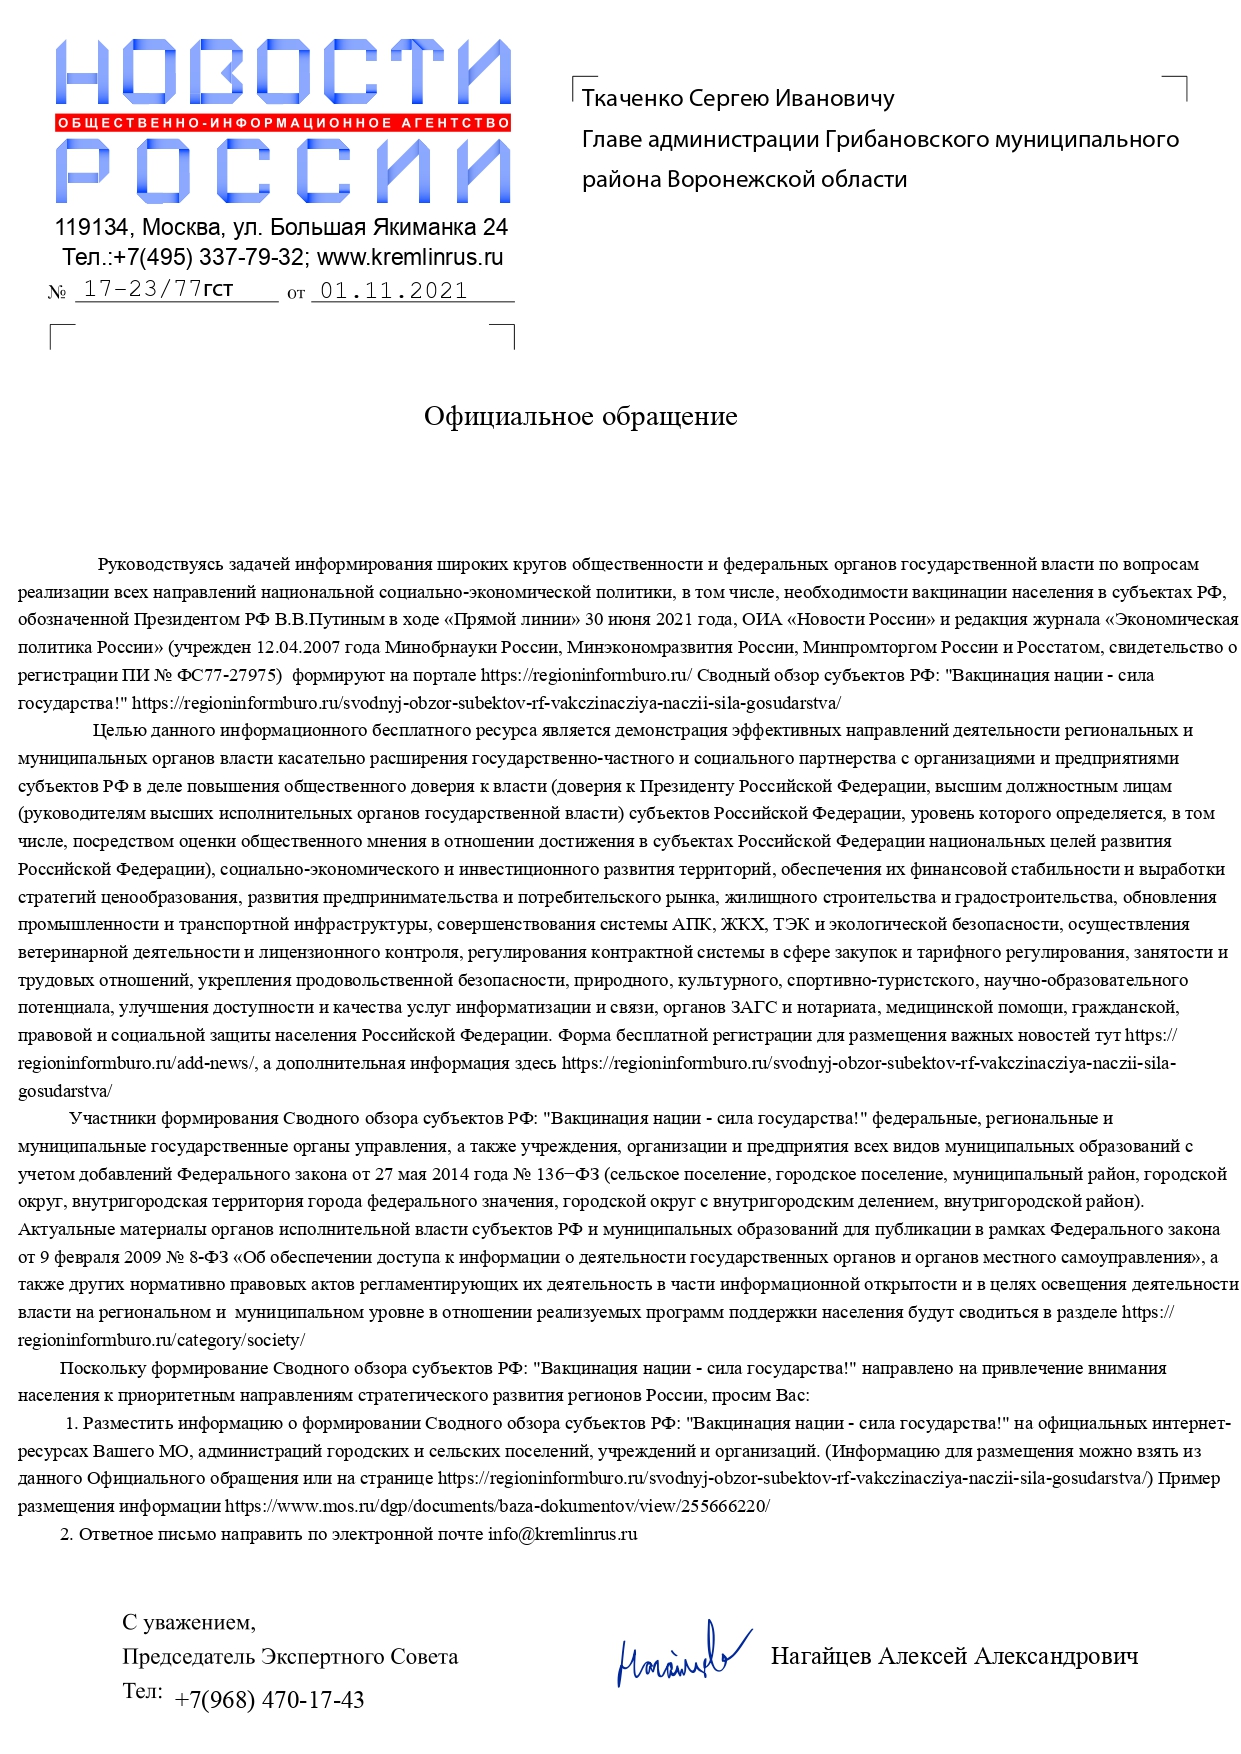 Сводный обзор субъектов РФ Вакцинация нации сила государства